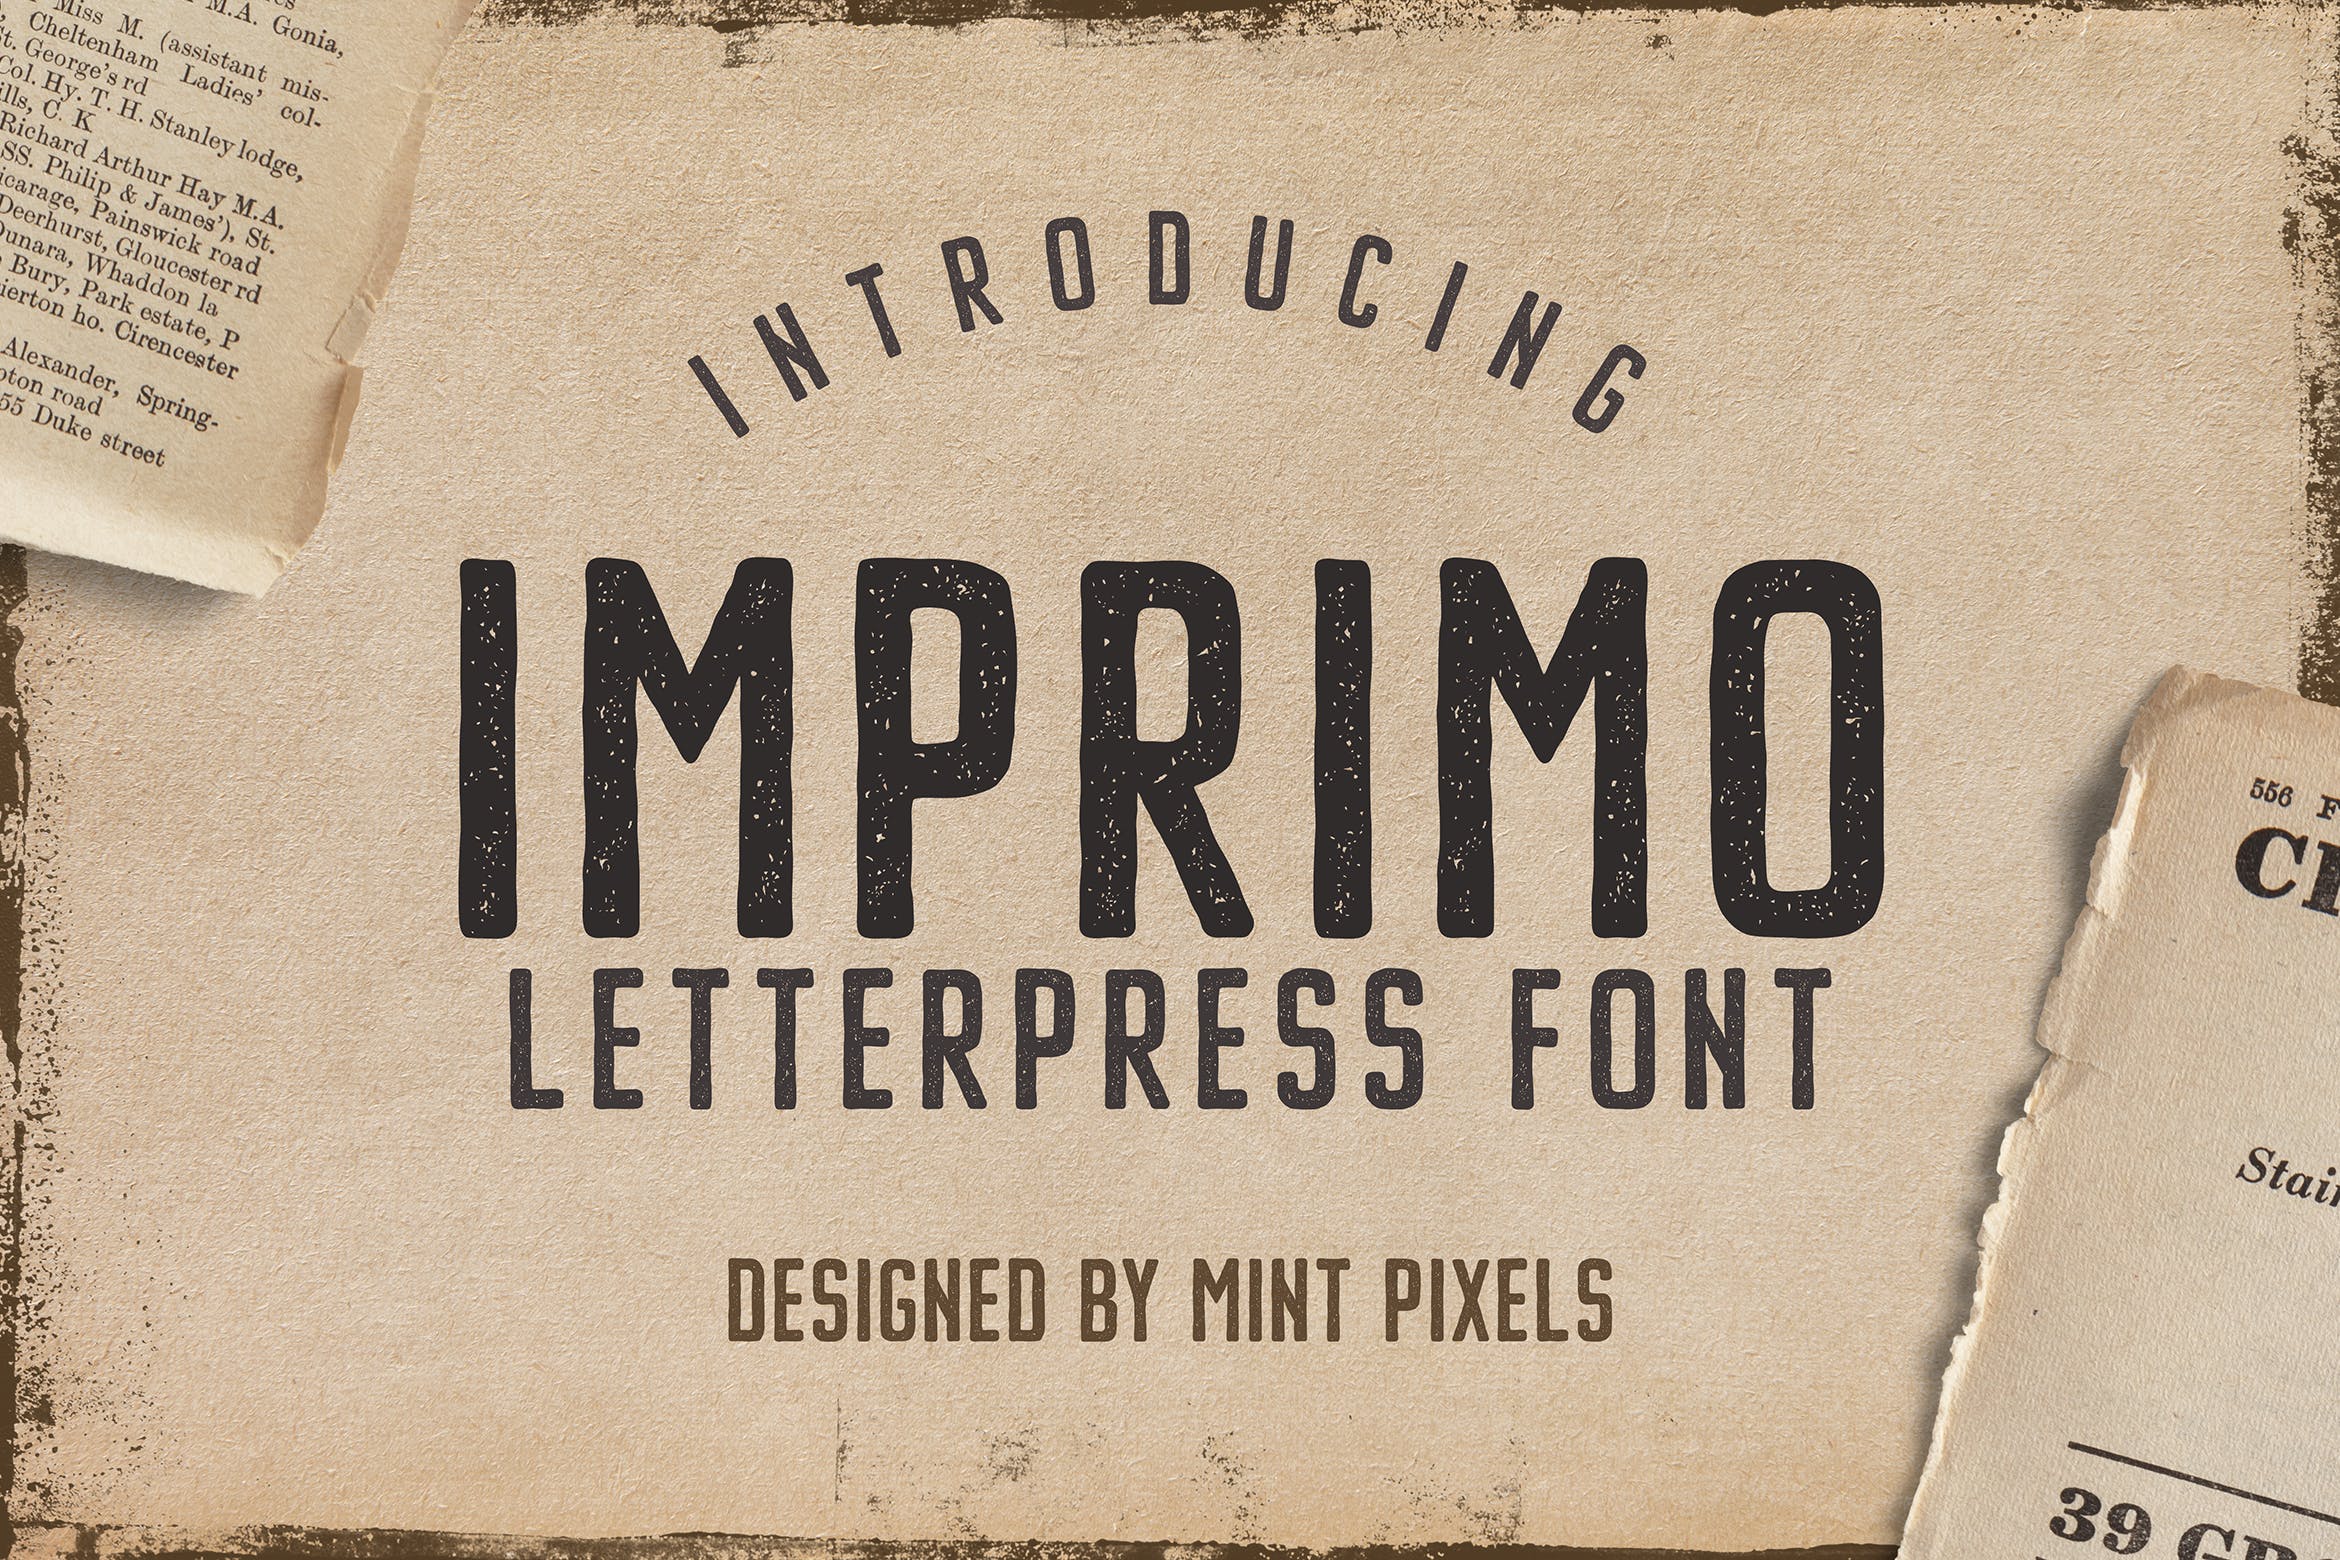 凸版印刷复古风格无衬线英文字体 Imprimo Letterpress Font插图